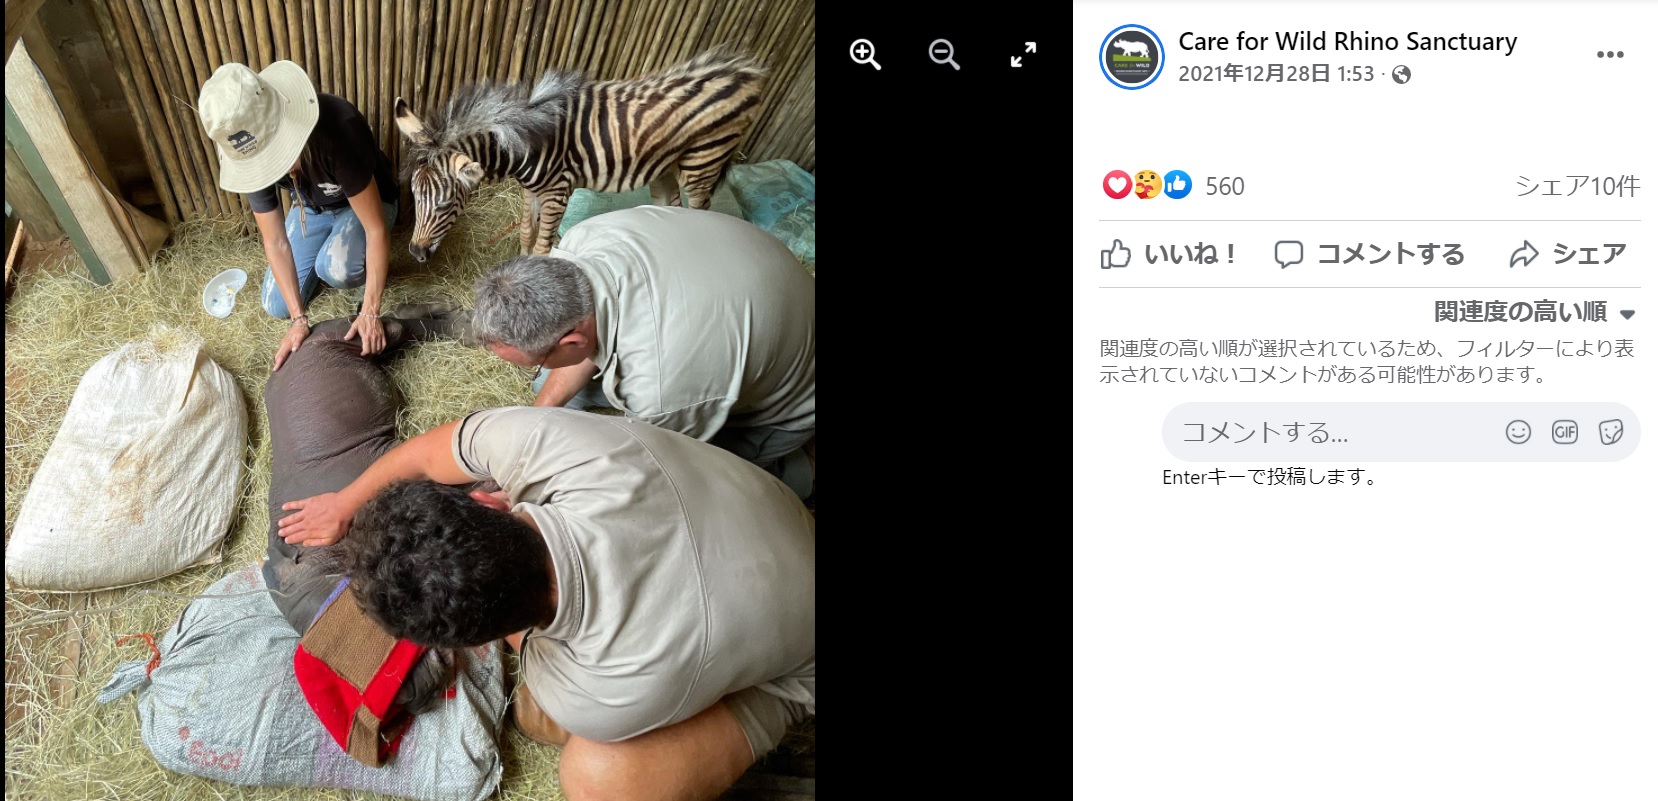 弱っているサイの赤ちゃんを心配そうに見守るシマウマ（画像は『Care for Wild Rhino Sanctuary　2021年12月28日付Facebook「DAISY UPDATE」』のスクリーンショット）